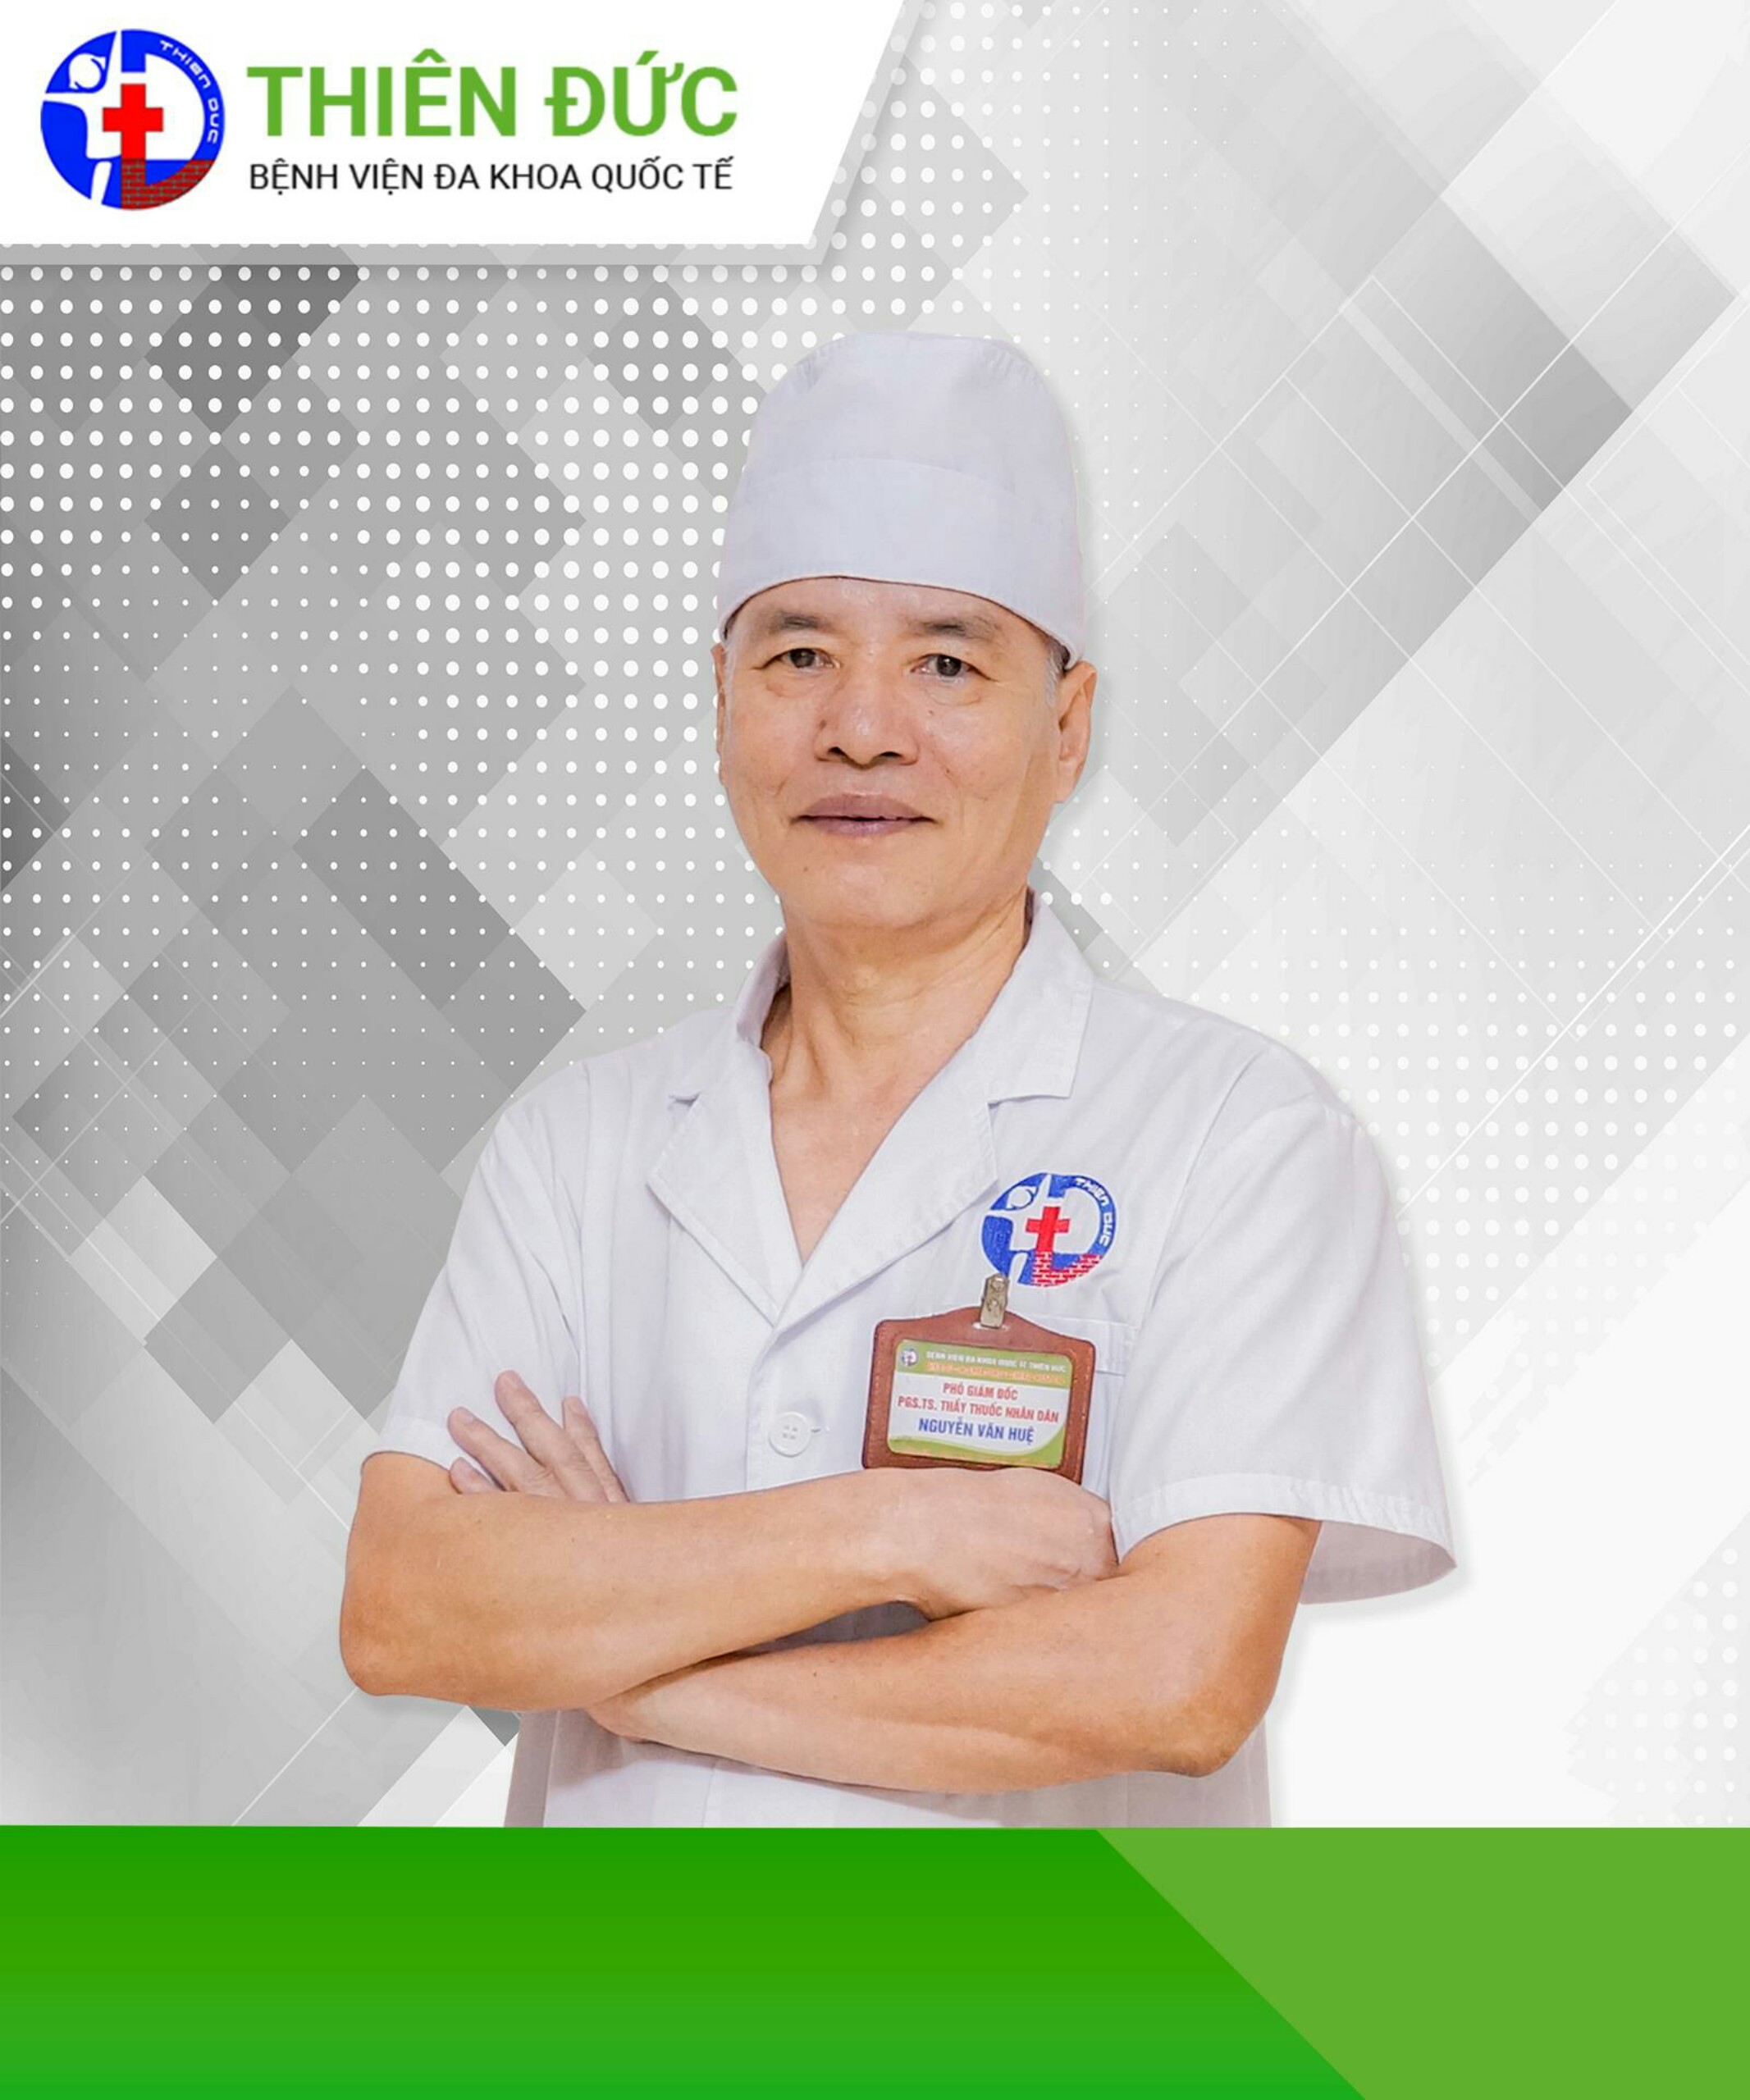 Bác sĩ Nguyễn Văn Huệ